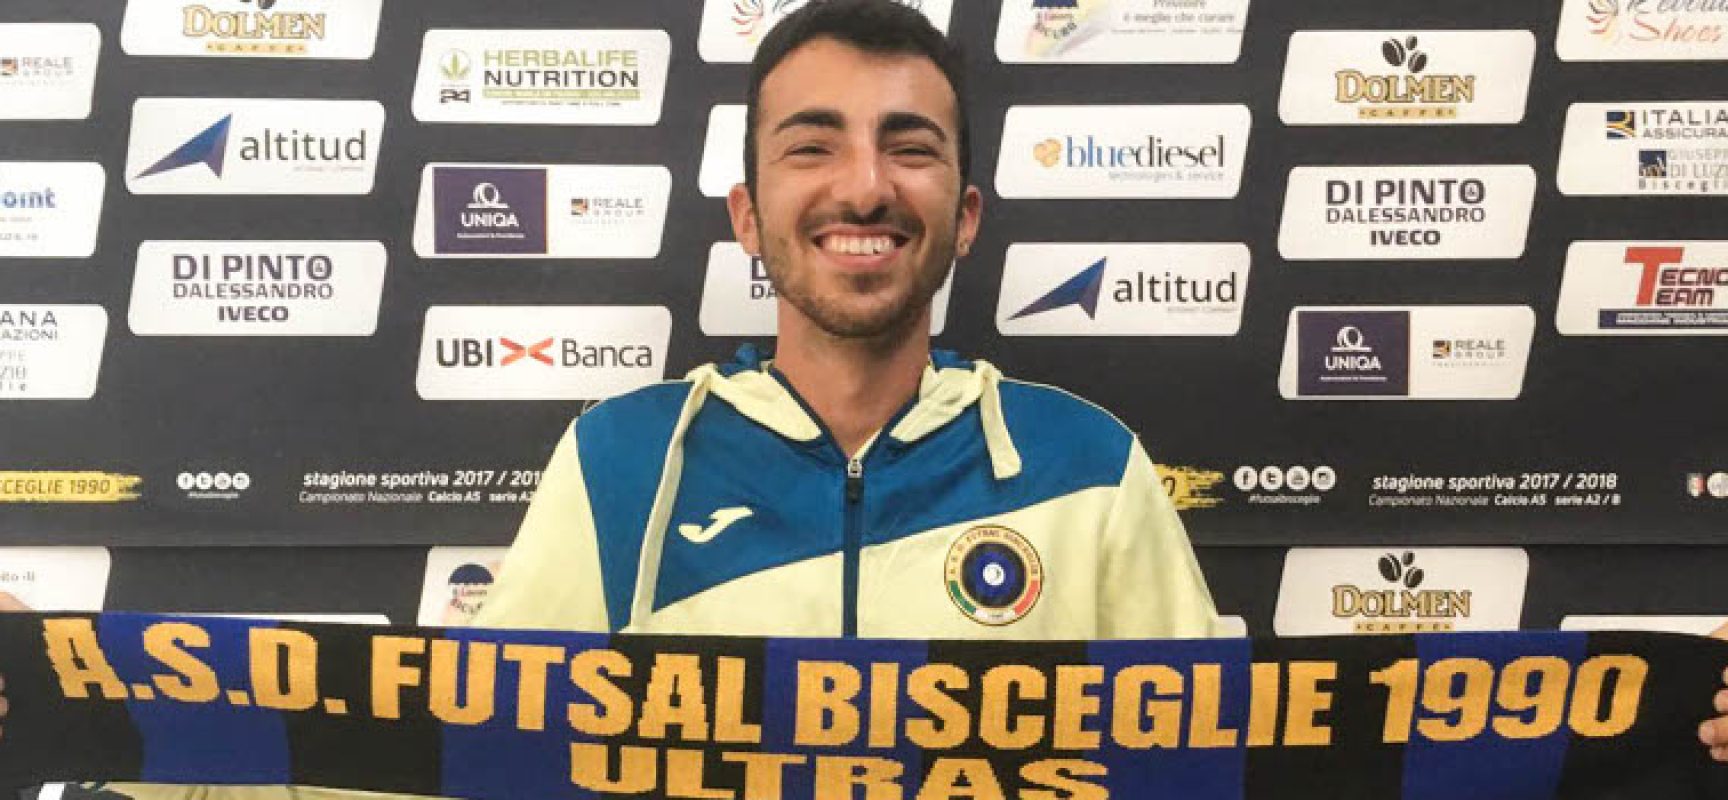 Futsal Bisceglie, Danilo Pappalettera entra nello staff tecnico dell’Under 19